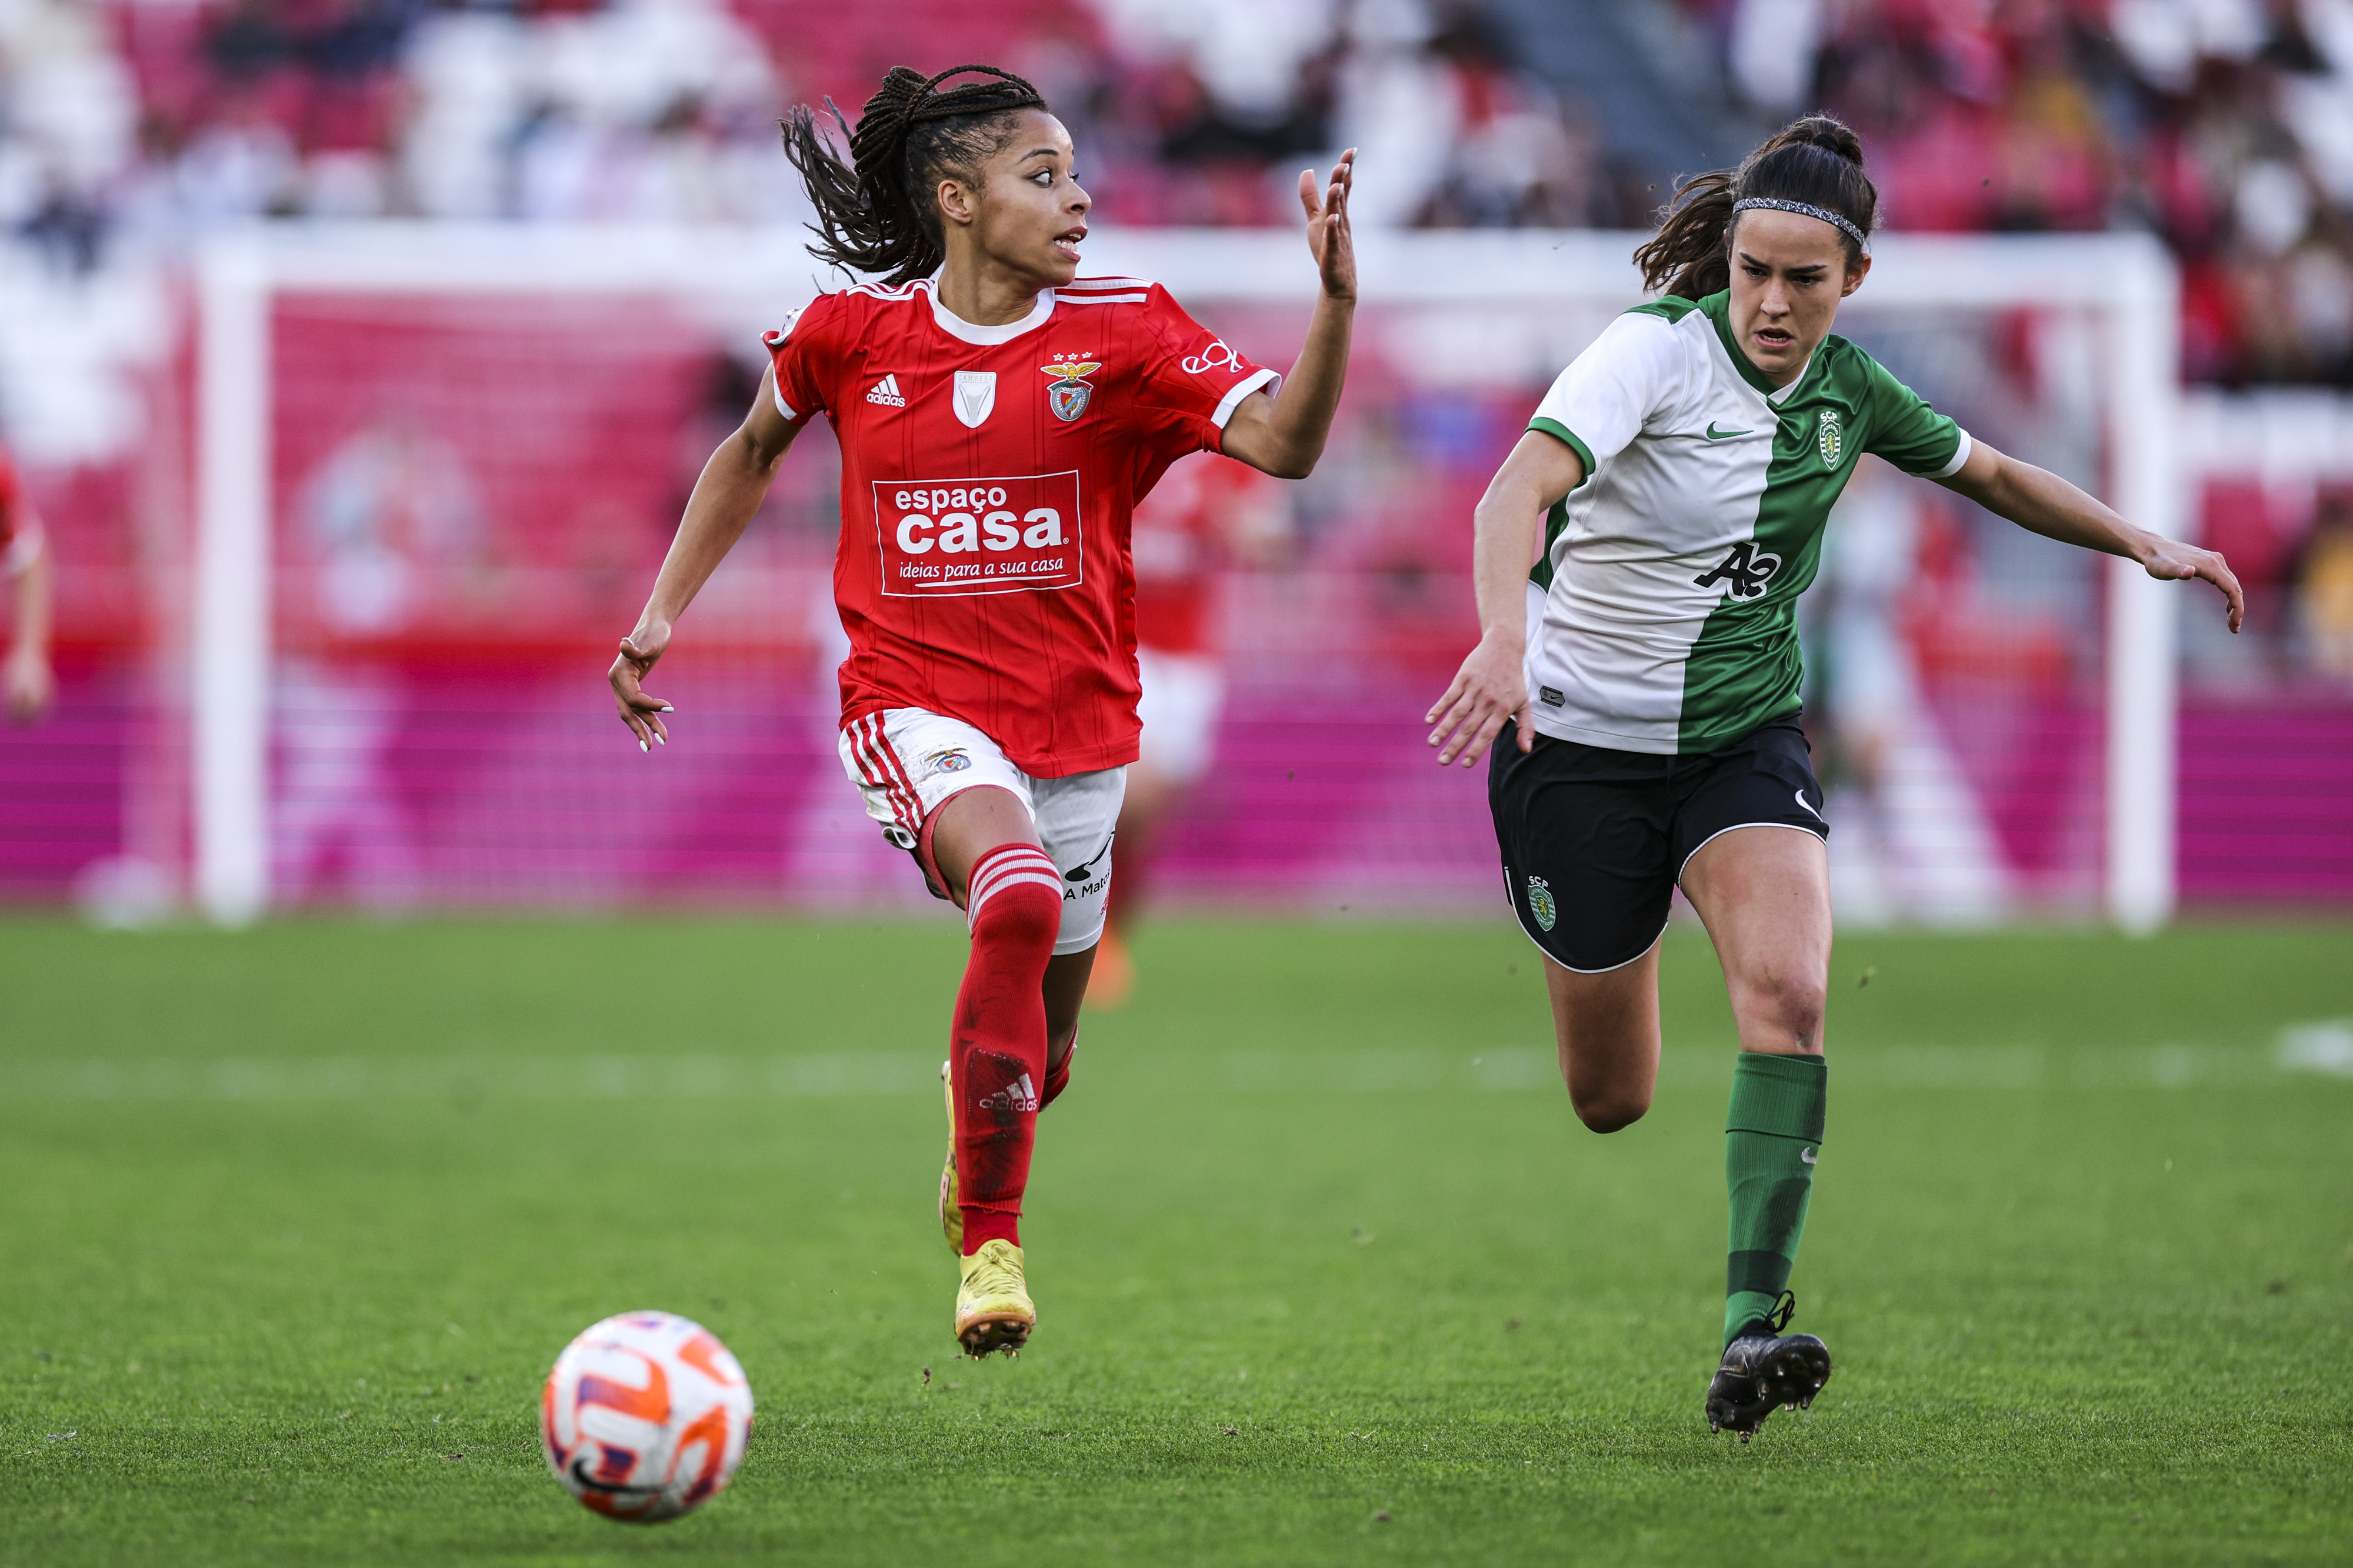 Benfica goleia Sporting na Luz e apura-se para as meias-finais da Taça de  Portugal feminina - Futebol Feminino - Jornal Record